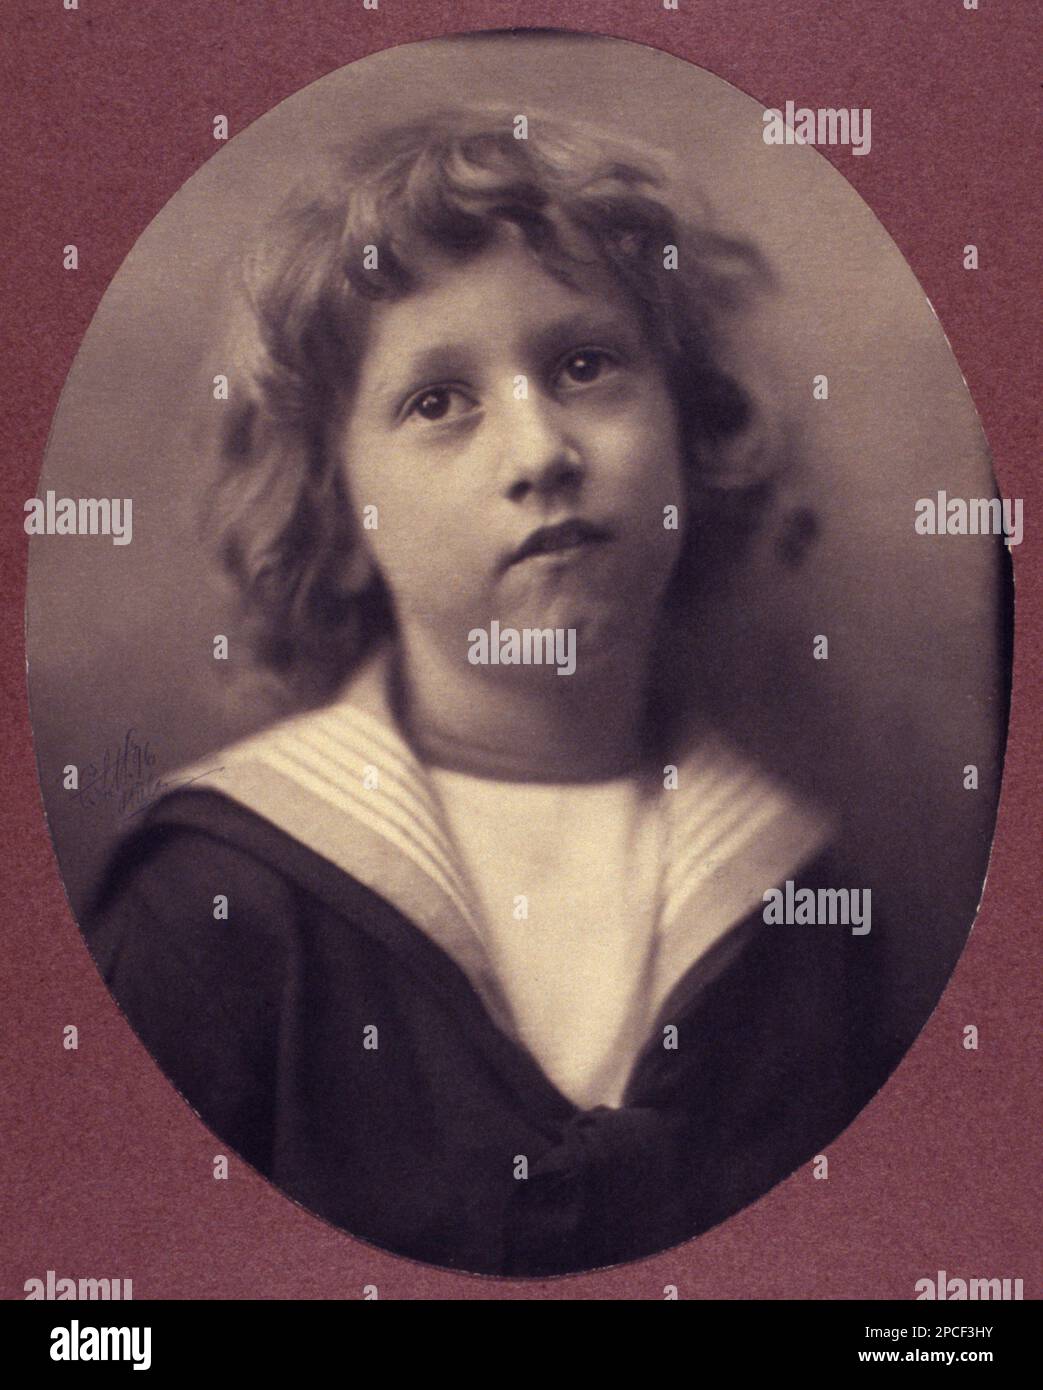 1896 , USA : ein Kind , das wie ein kleiner Seemann angezogen ist . Foto des amerikanischen Bildfotografen CLAYTON STONE ( C.S.) HARRIS - FOTO STORICHE - GESCHICHTSFOTOS - KRAGEN - COLLETTO - MARINARETTO - VESTITO ALLA MARINARA - - BAMBINO - BAMBINI - KINDER - BABY - BELLE EPOQUE - FOTO PITTORIALISTA - MODE - MODA - STORIA DELLA FOTOGRAFIA ---- Archivio GBB Stockfoto